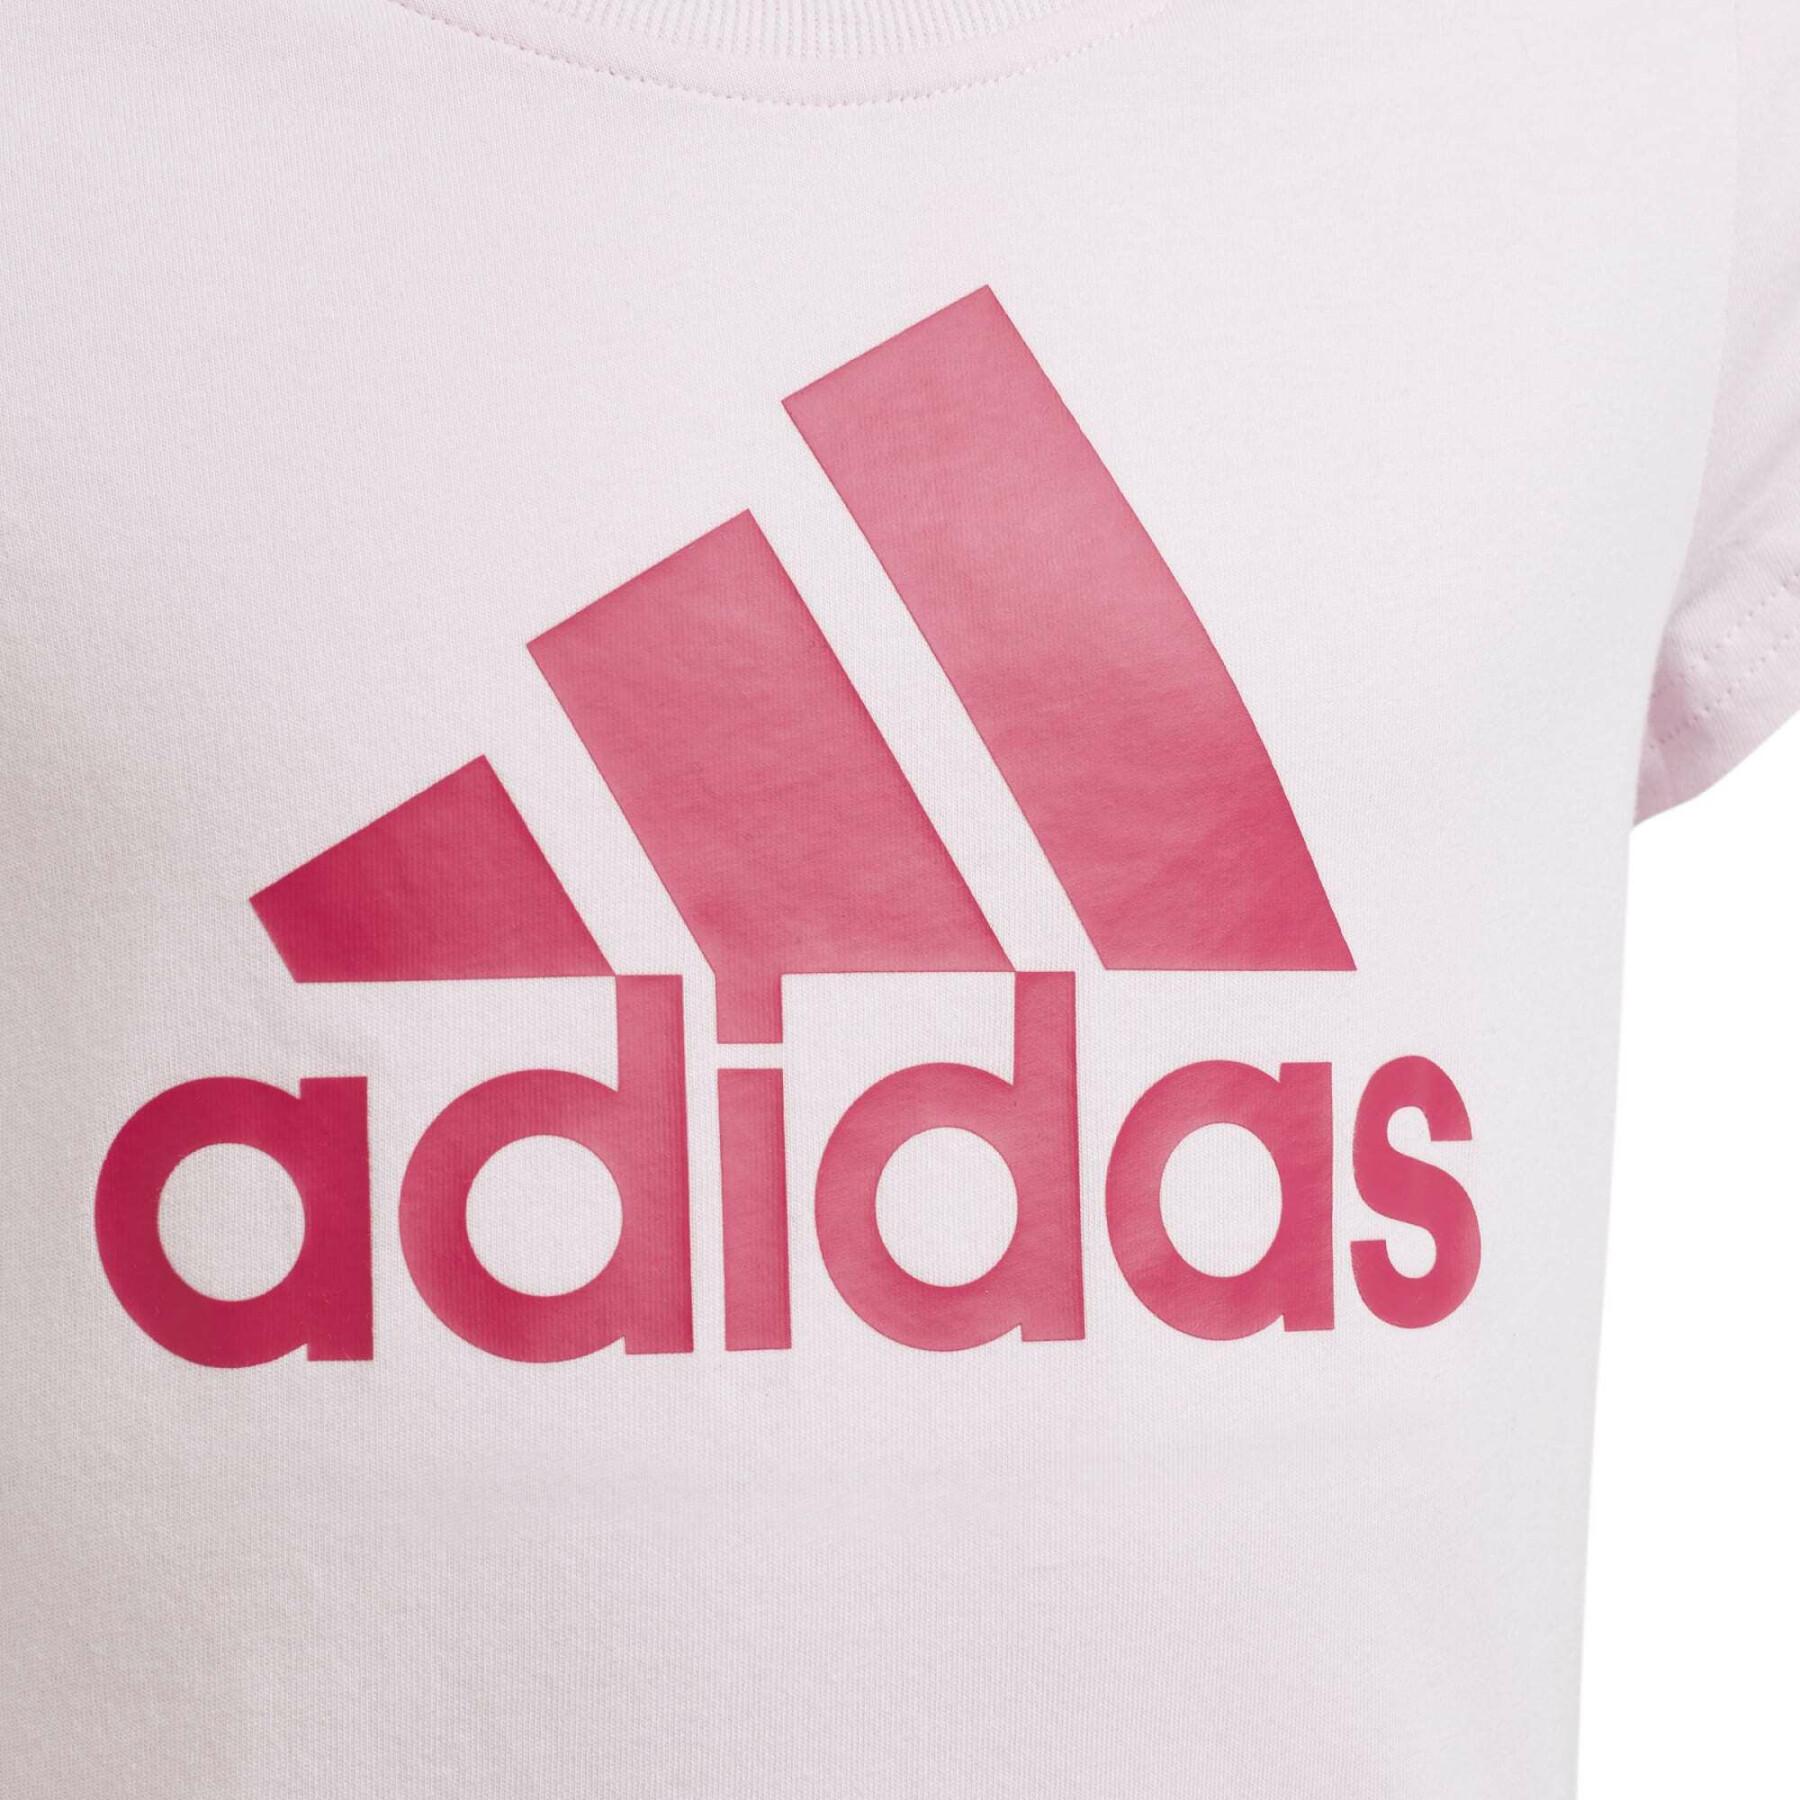 Koszulka dla dziewczynki adidas Essentials